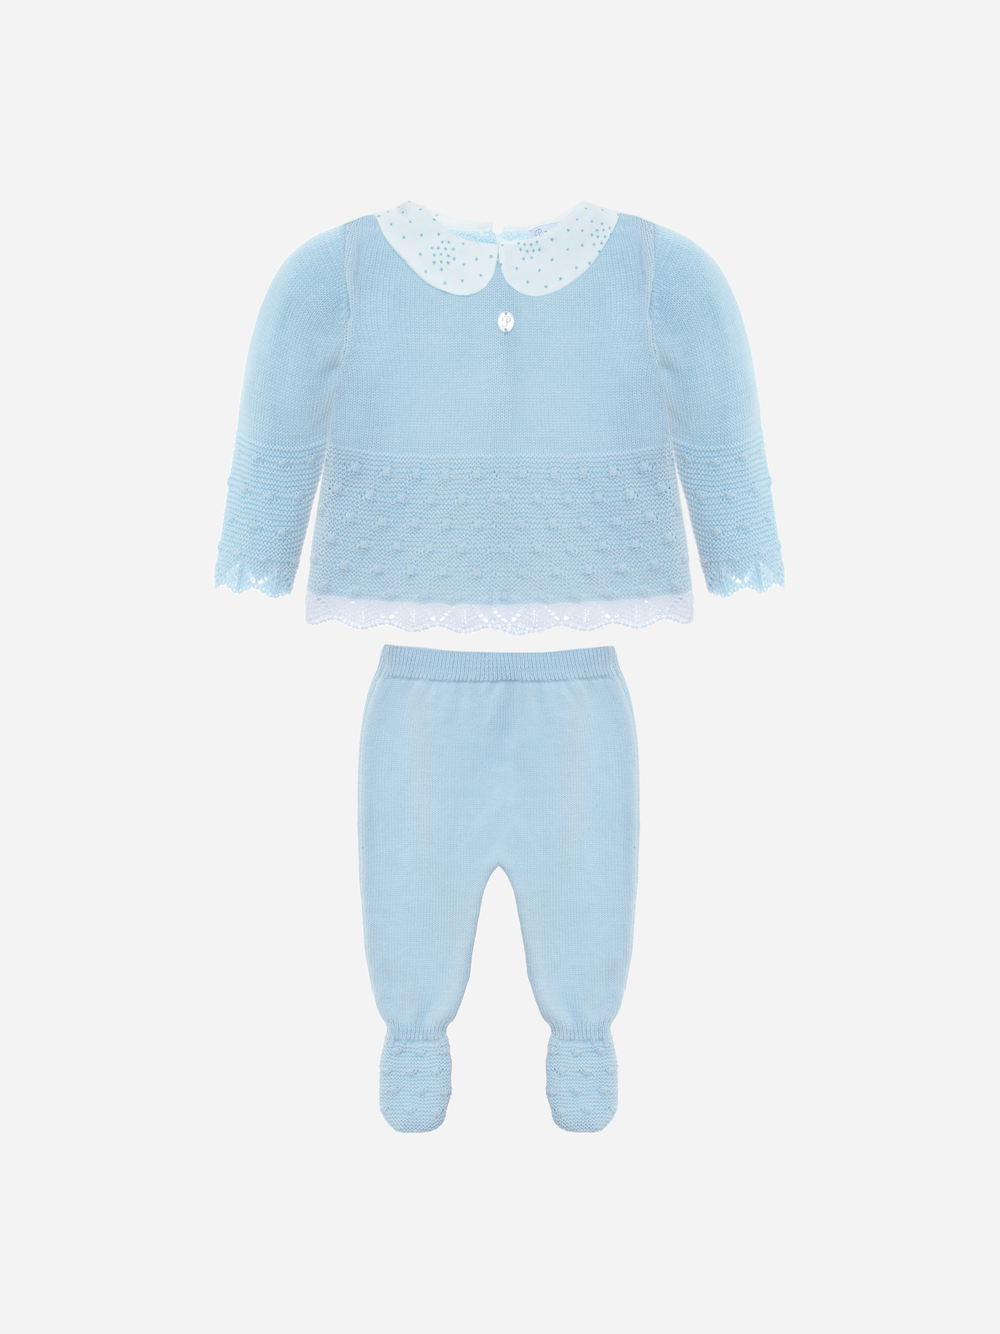 Baby boy blue knit set